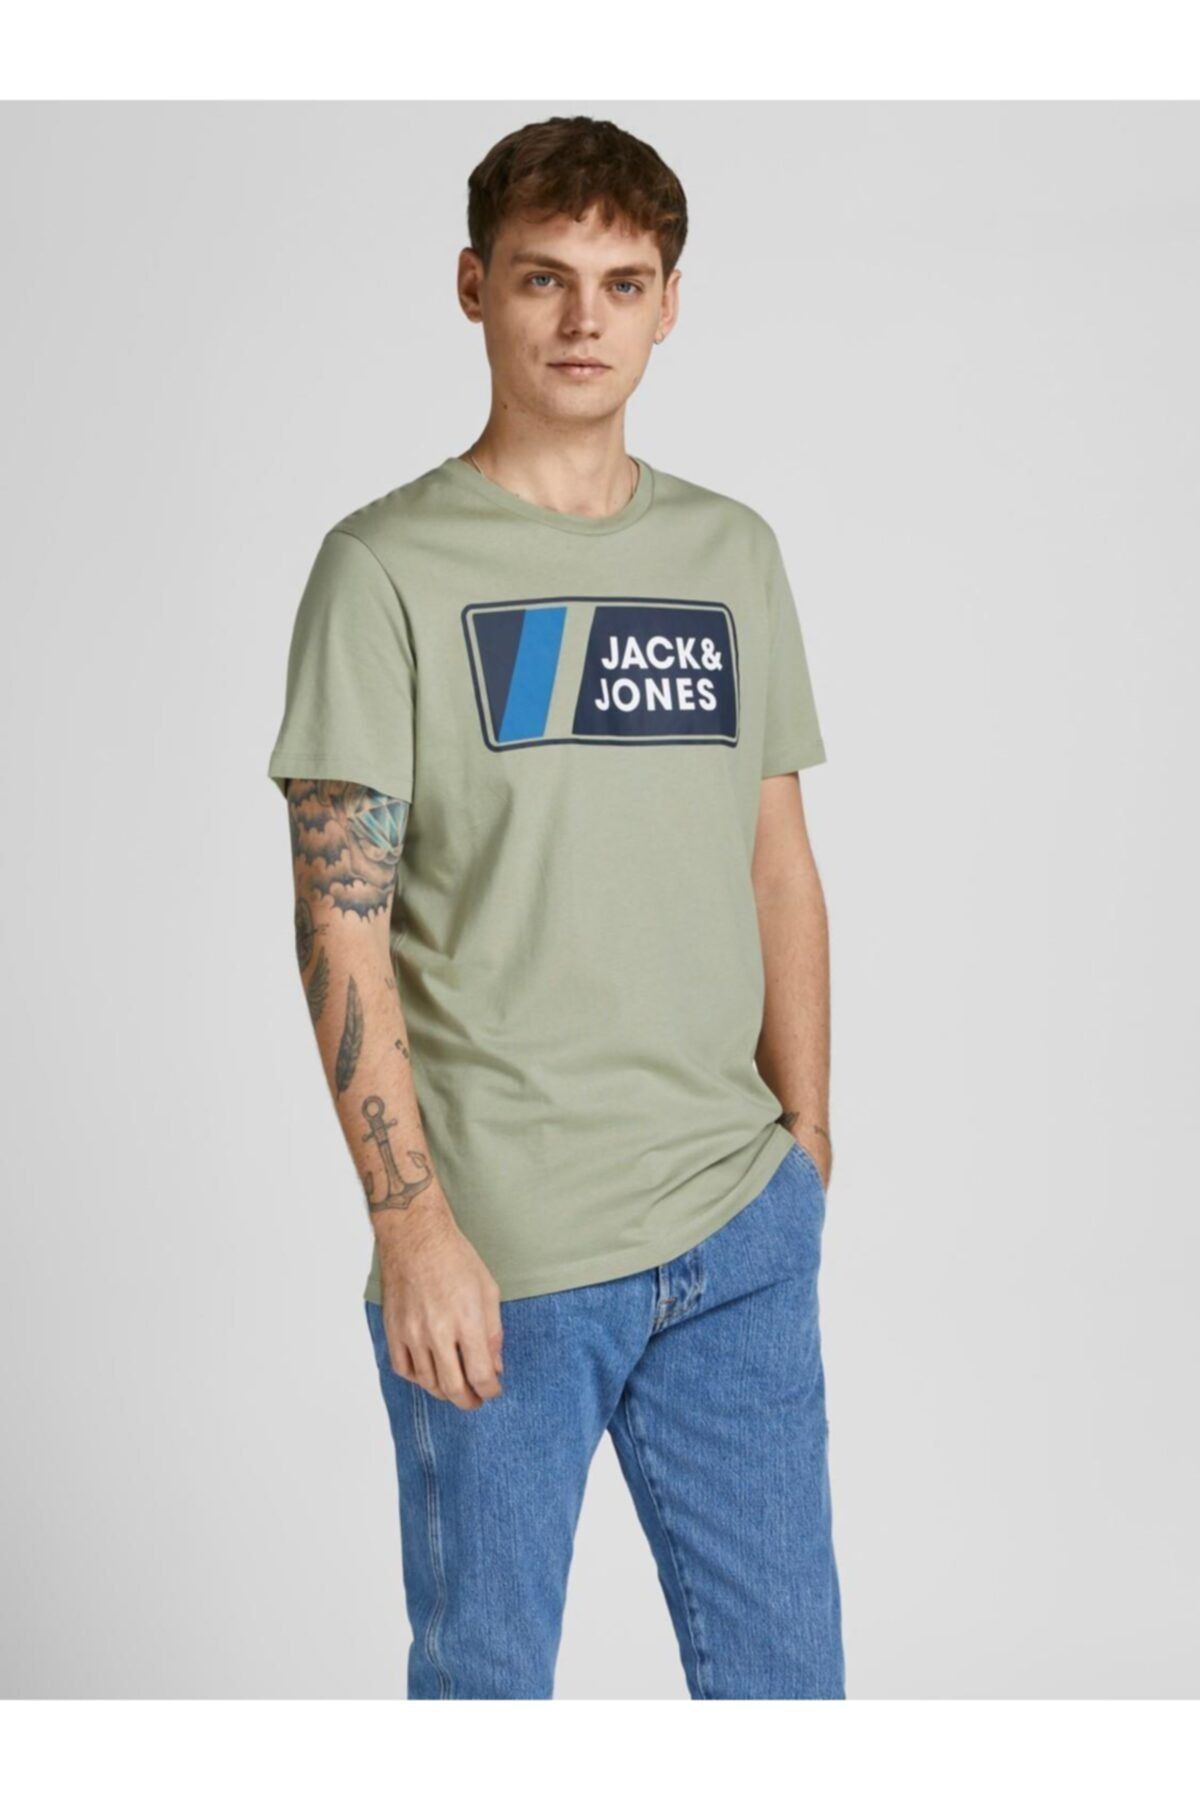 تی شرت مردانه سبز جک اند جونز Jack & Jones (برند دانمارک)